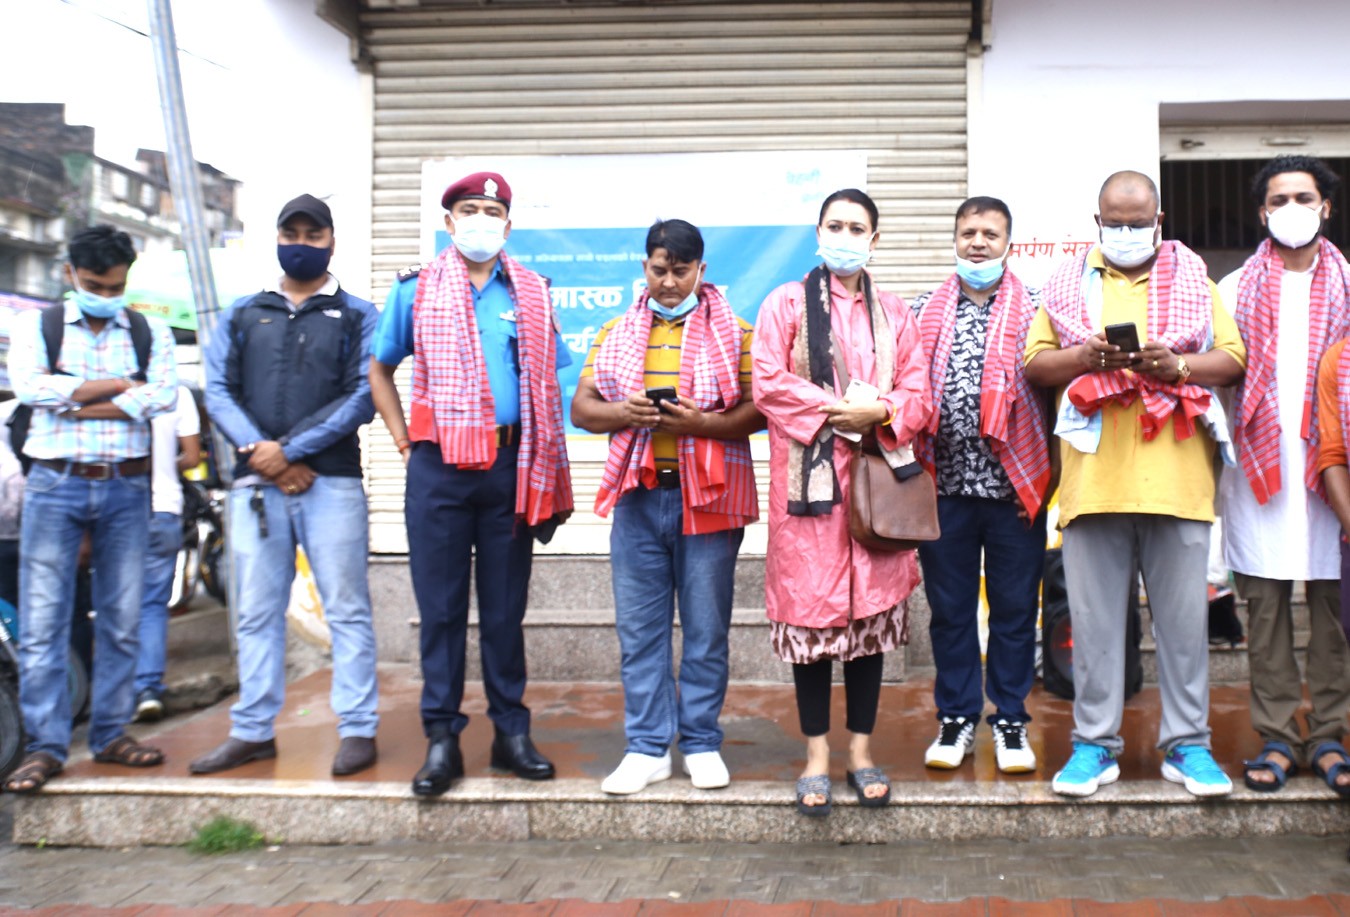 नेपाल मास्क अभियानमा सानो पाइलाको ऐक्यबद्धता, एक लाख मास्क वितरण गर्दै